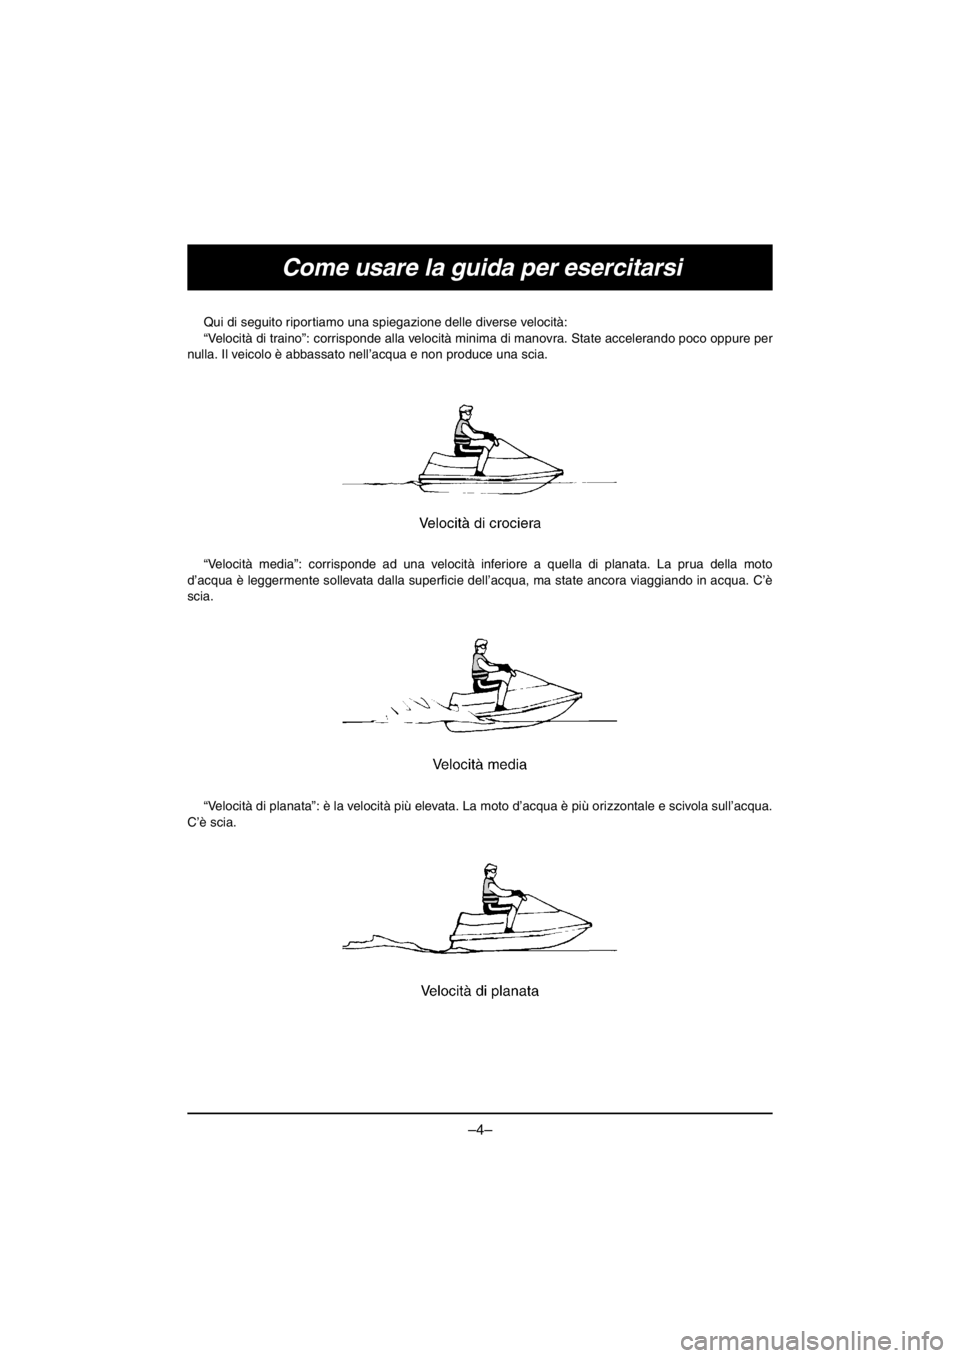 YAMAHA V1 2016  Manuale duso (in Italian) –4–
Come usare la guida per esercitarsi
Qui di seguito riportiamo una spiegazione delle diverse velocità: 
“Velocità di traino”: corrisponde alla velocità minima di manovra. State acceleran